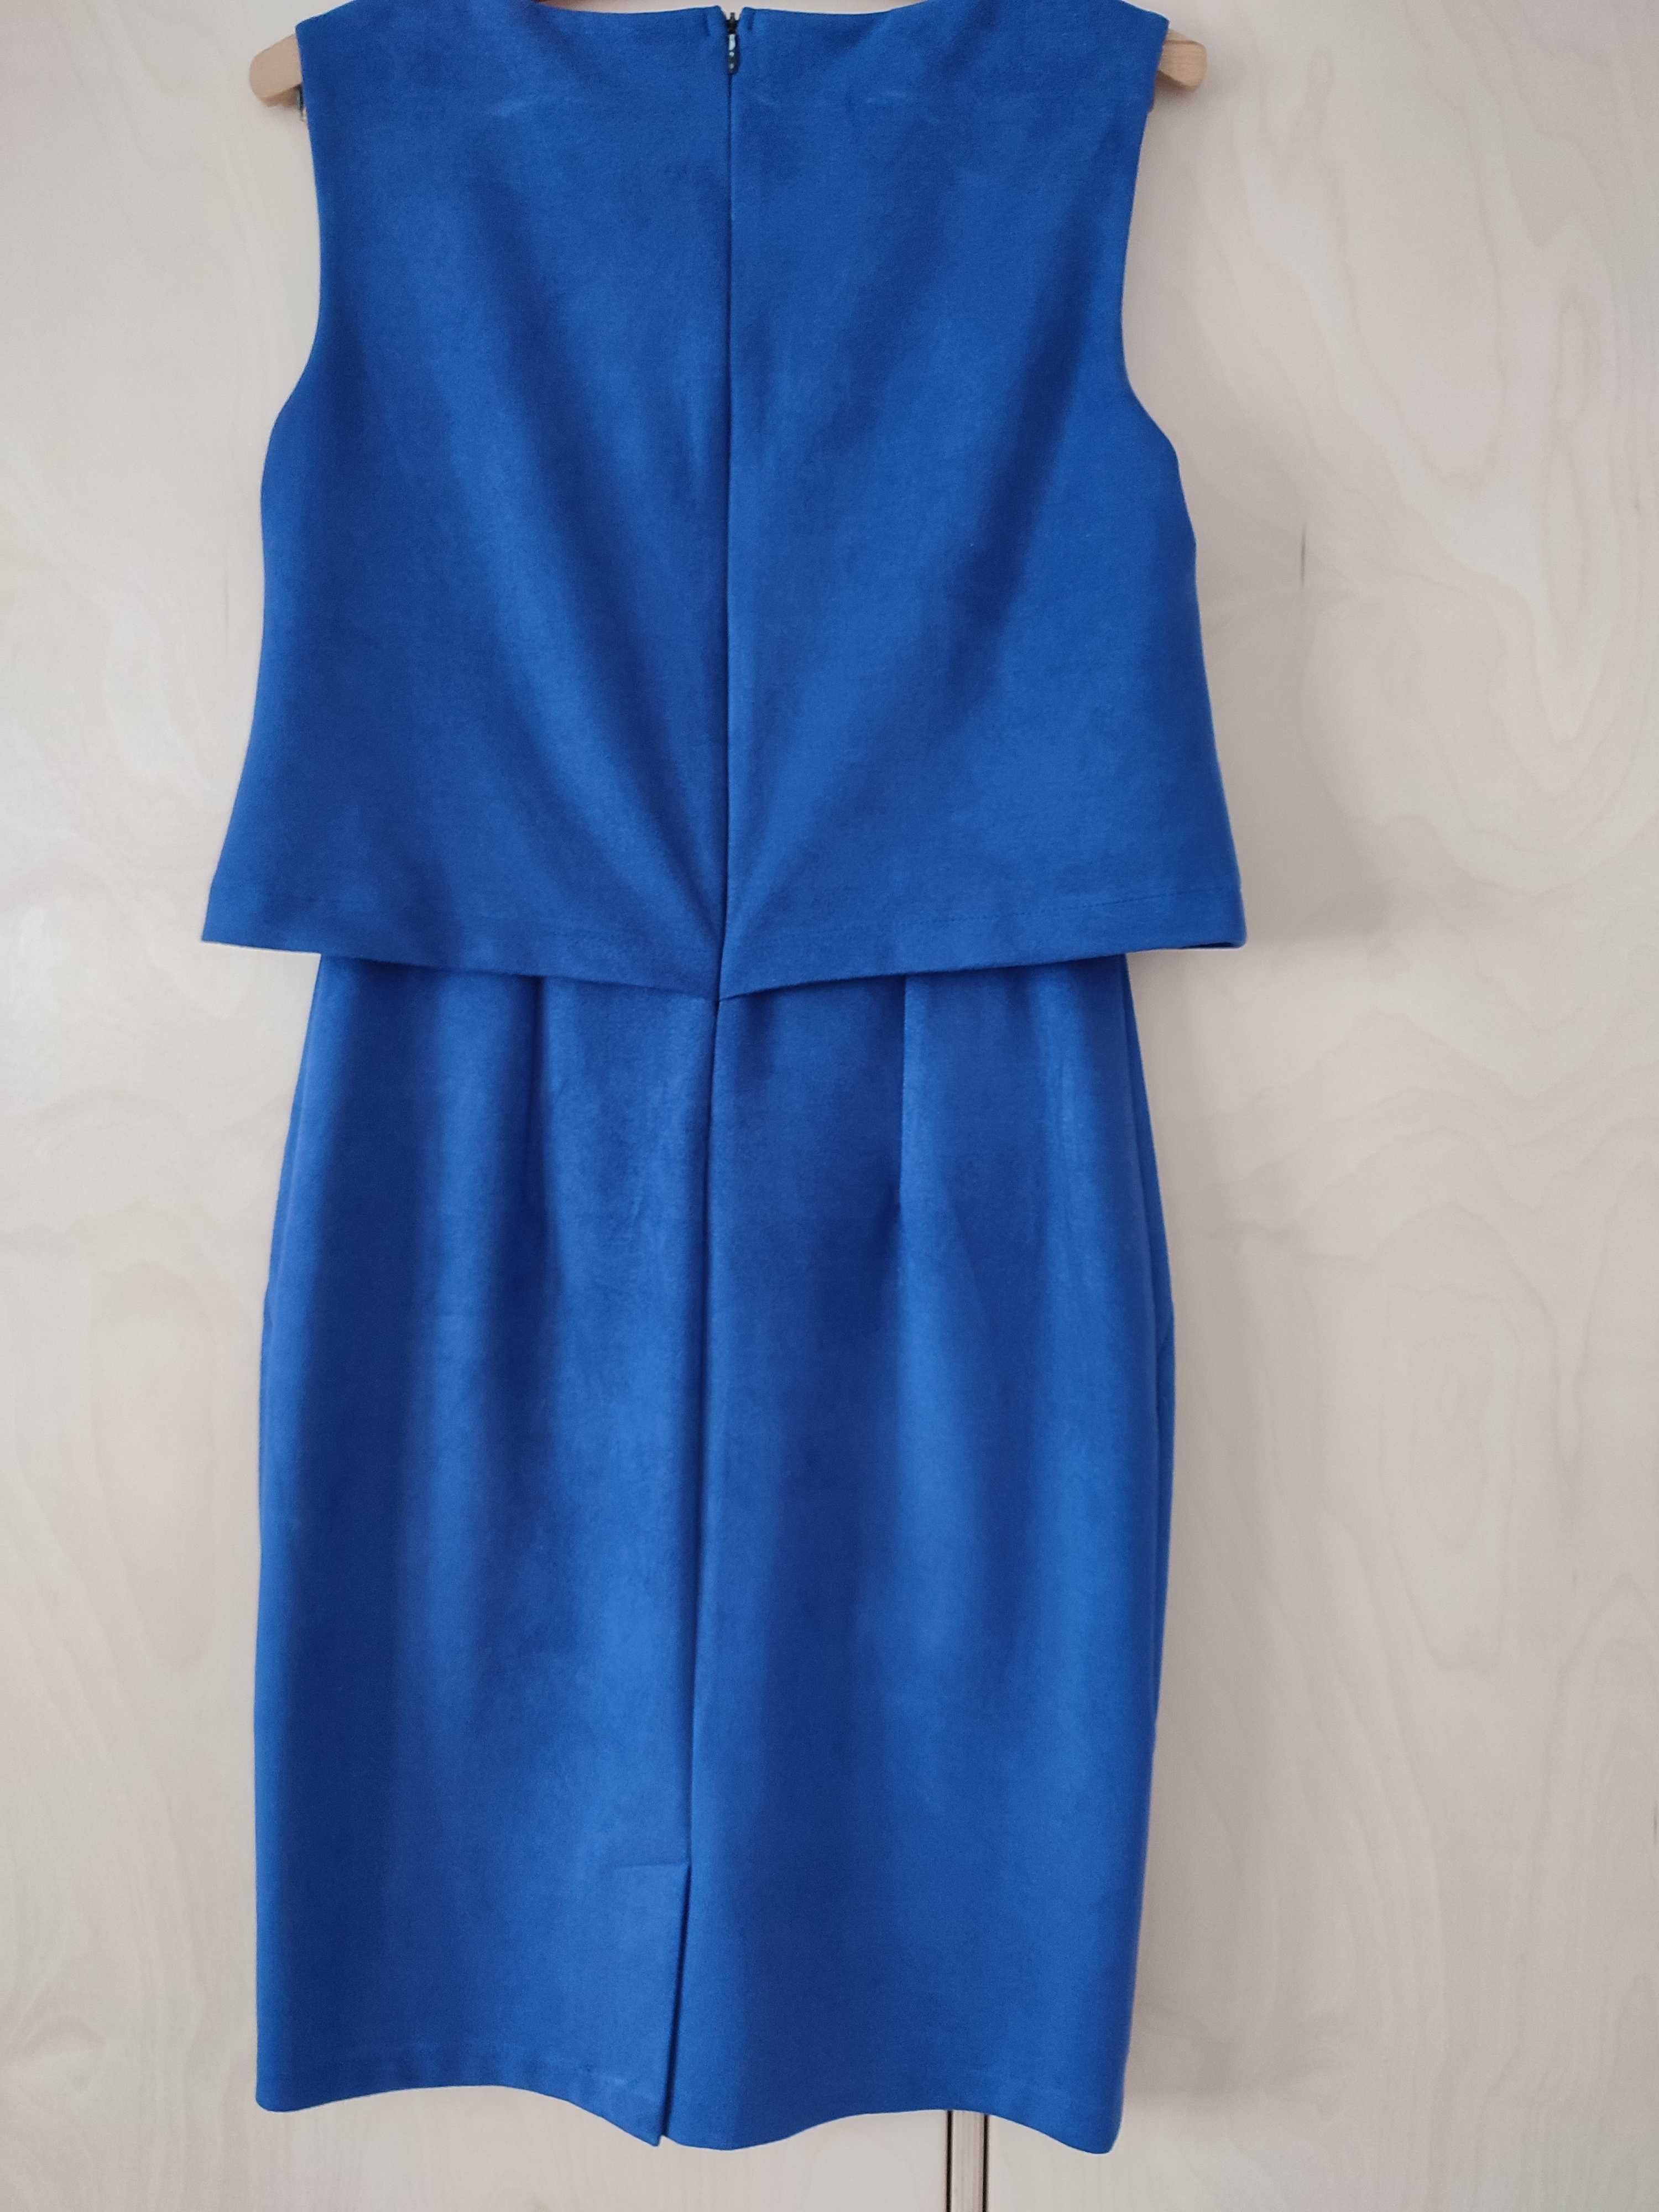 Niebieska sukienka bez rękawów rozmiar S